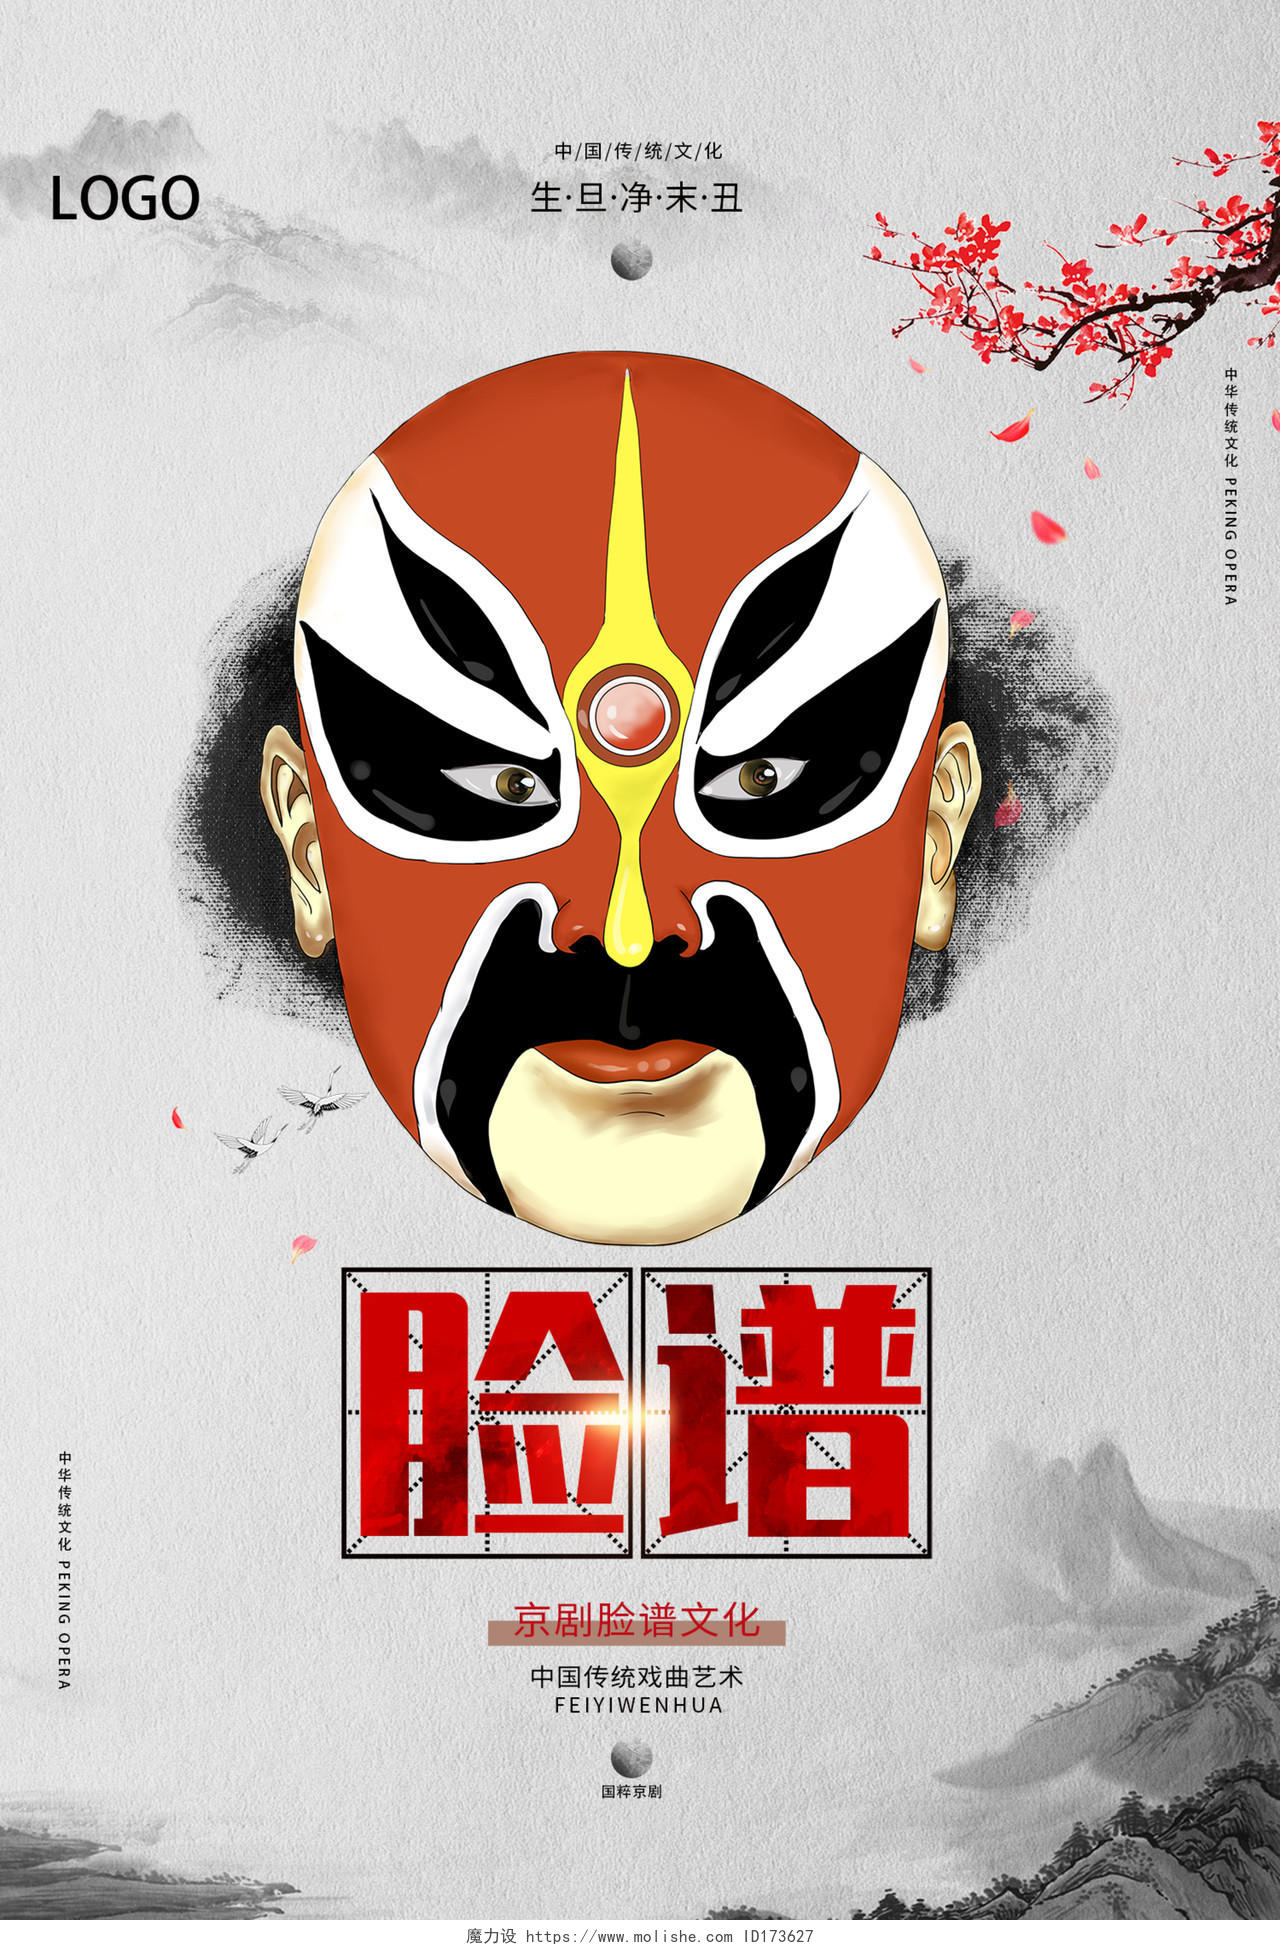 灰色传统中国风脸谱京剧戏曲文化海报设计京剧海报